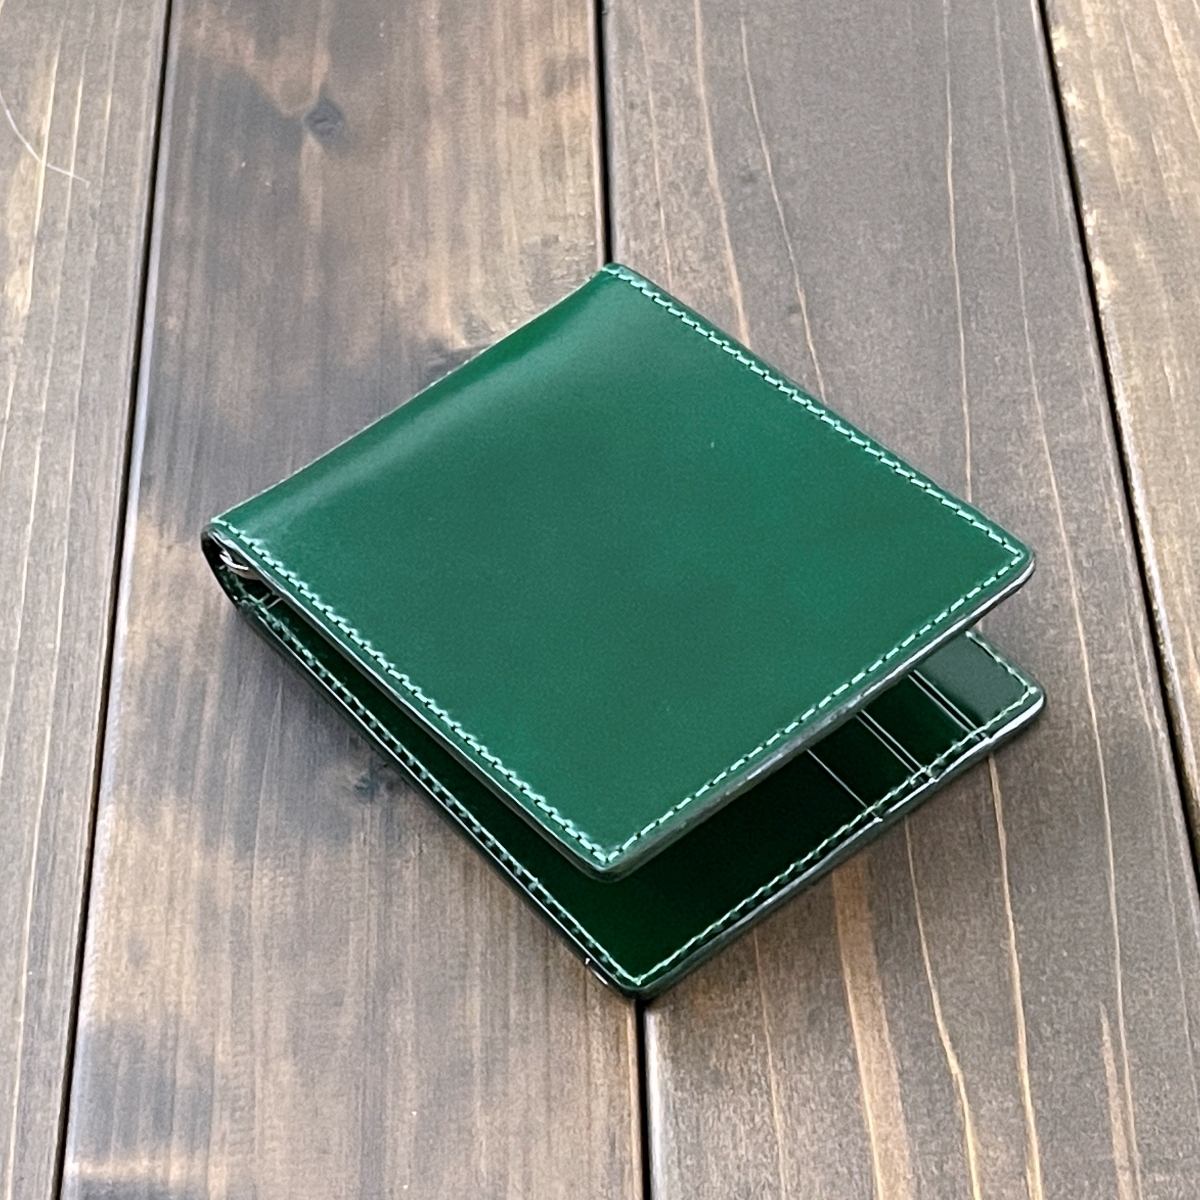 CORDOVANre- Dell o сторона темно-бордовый зажим для денег зеленый зеленый кошелек масло grading мужской женский подарок лошадь кожа 